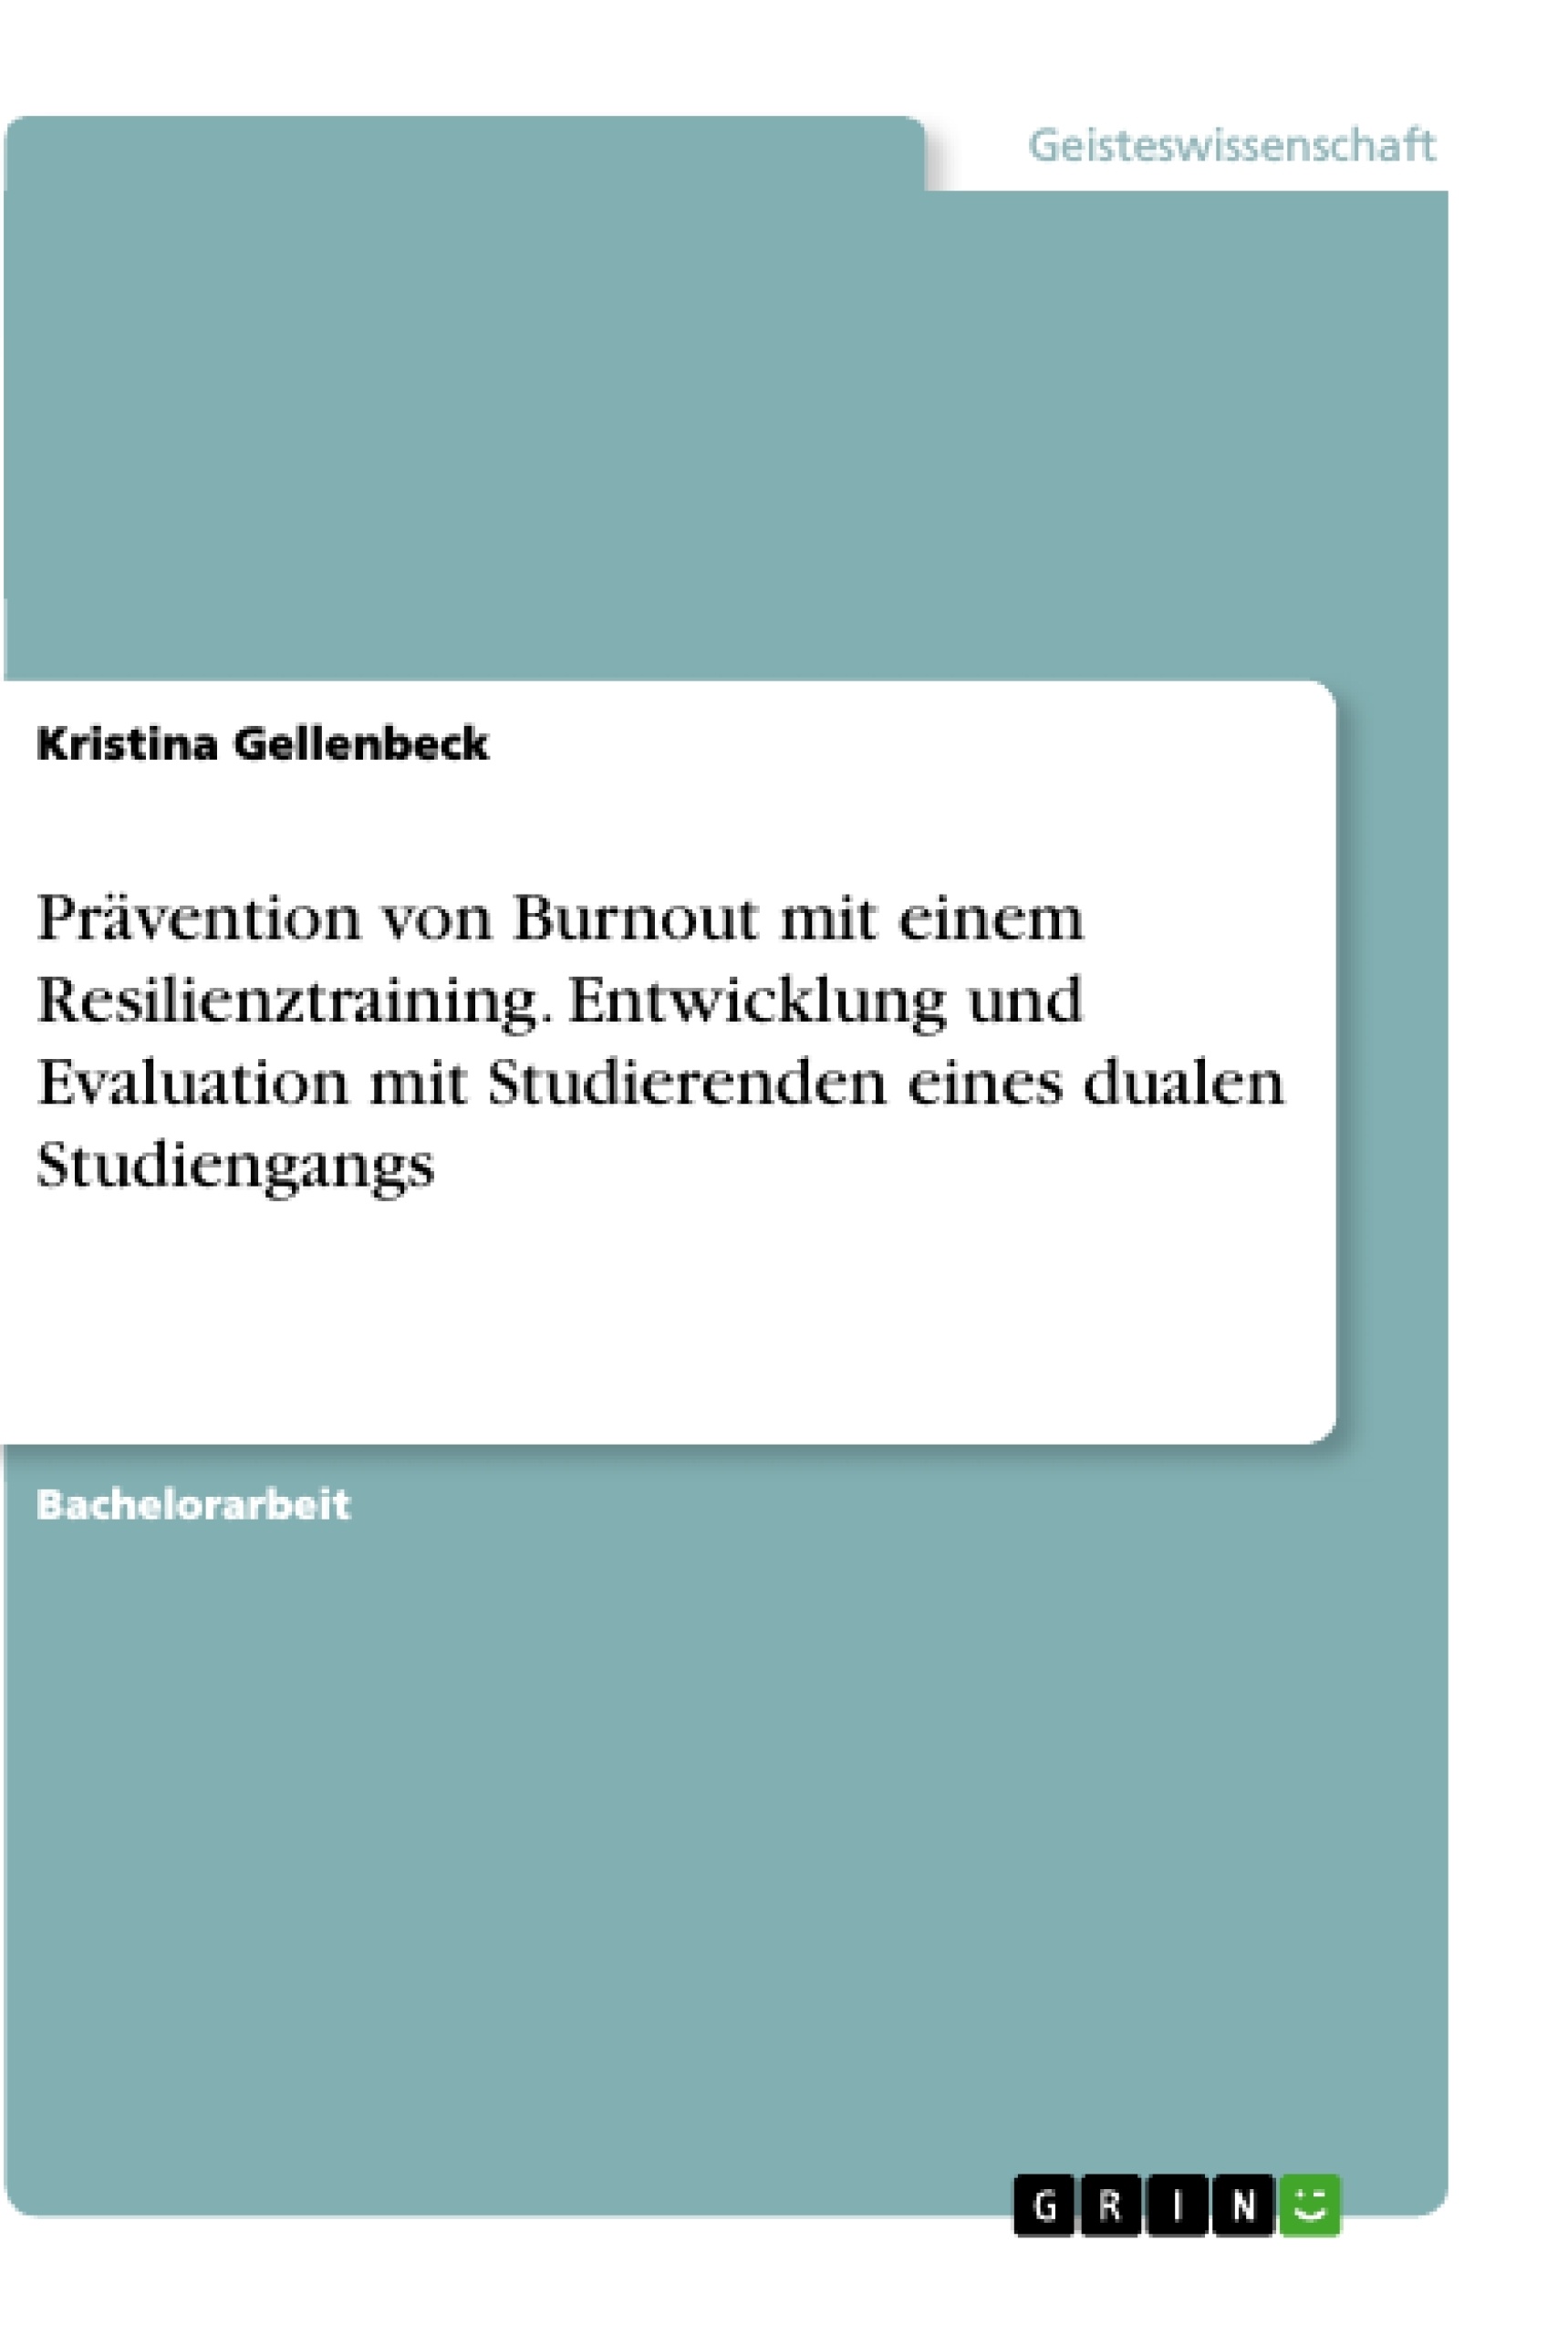 Title: Prävention von Burnout mit einem Resilienztraining. Entwicklung und Evaluation mit Studierenden eines dualen Studiengangs